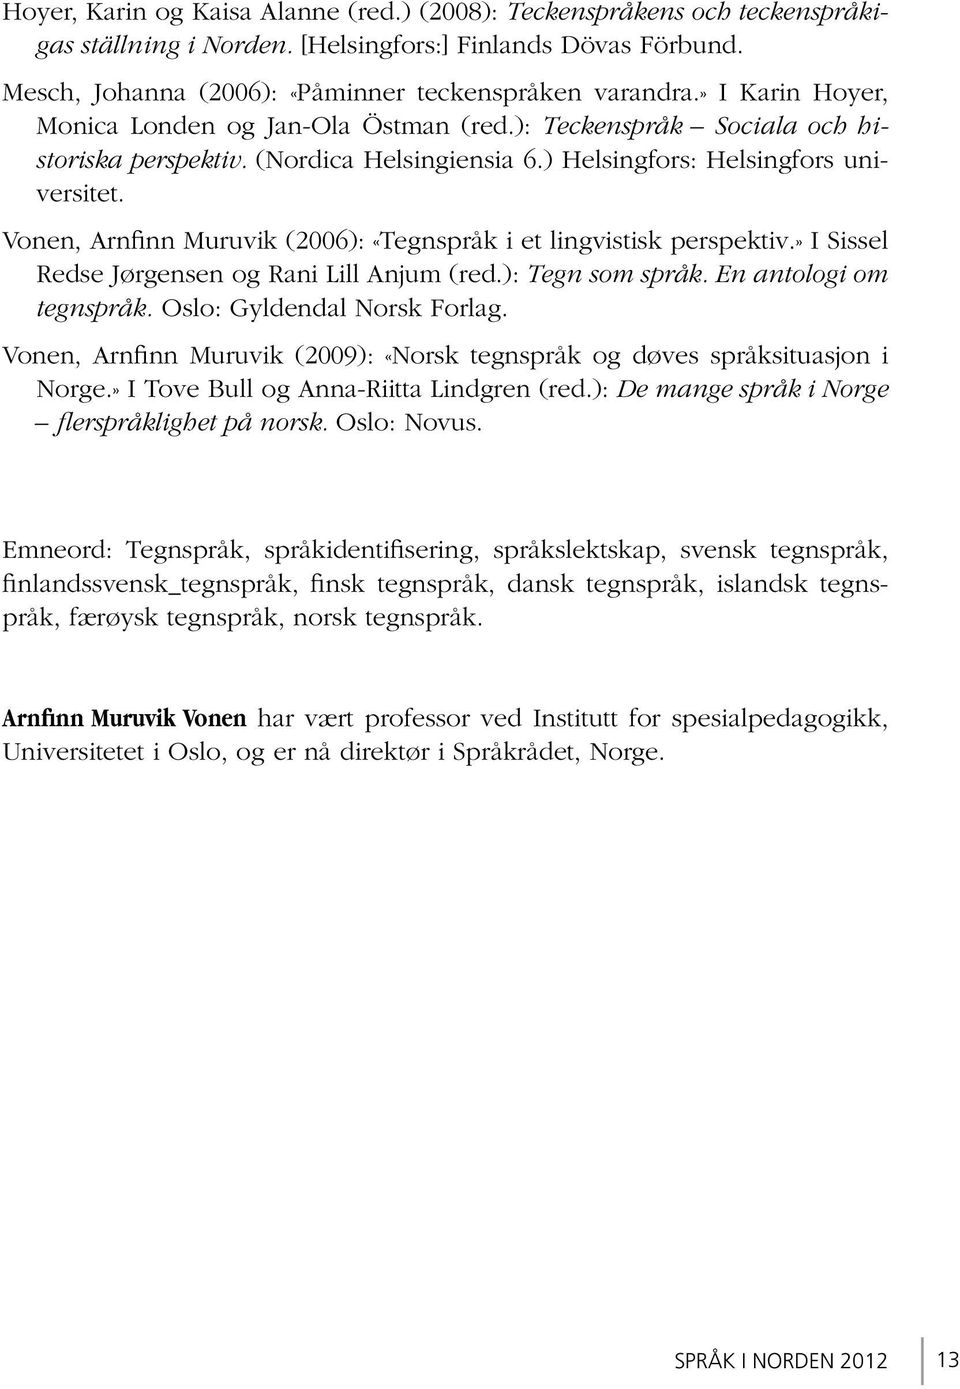 Vonen, Arnfinn Muruvik (2006): «Tegnspråk i et lingvistisk perspektiv.» I Sissel Redse Jørgensen og Rani Lill Anjum (red.): Tegn som språk. En antologi om tegnspråk. Oslo: Gyldendal Norsk Forlag.